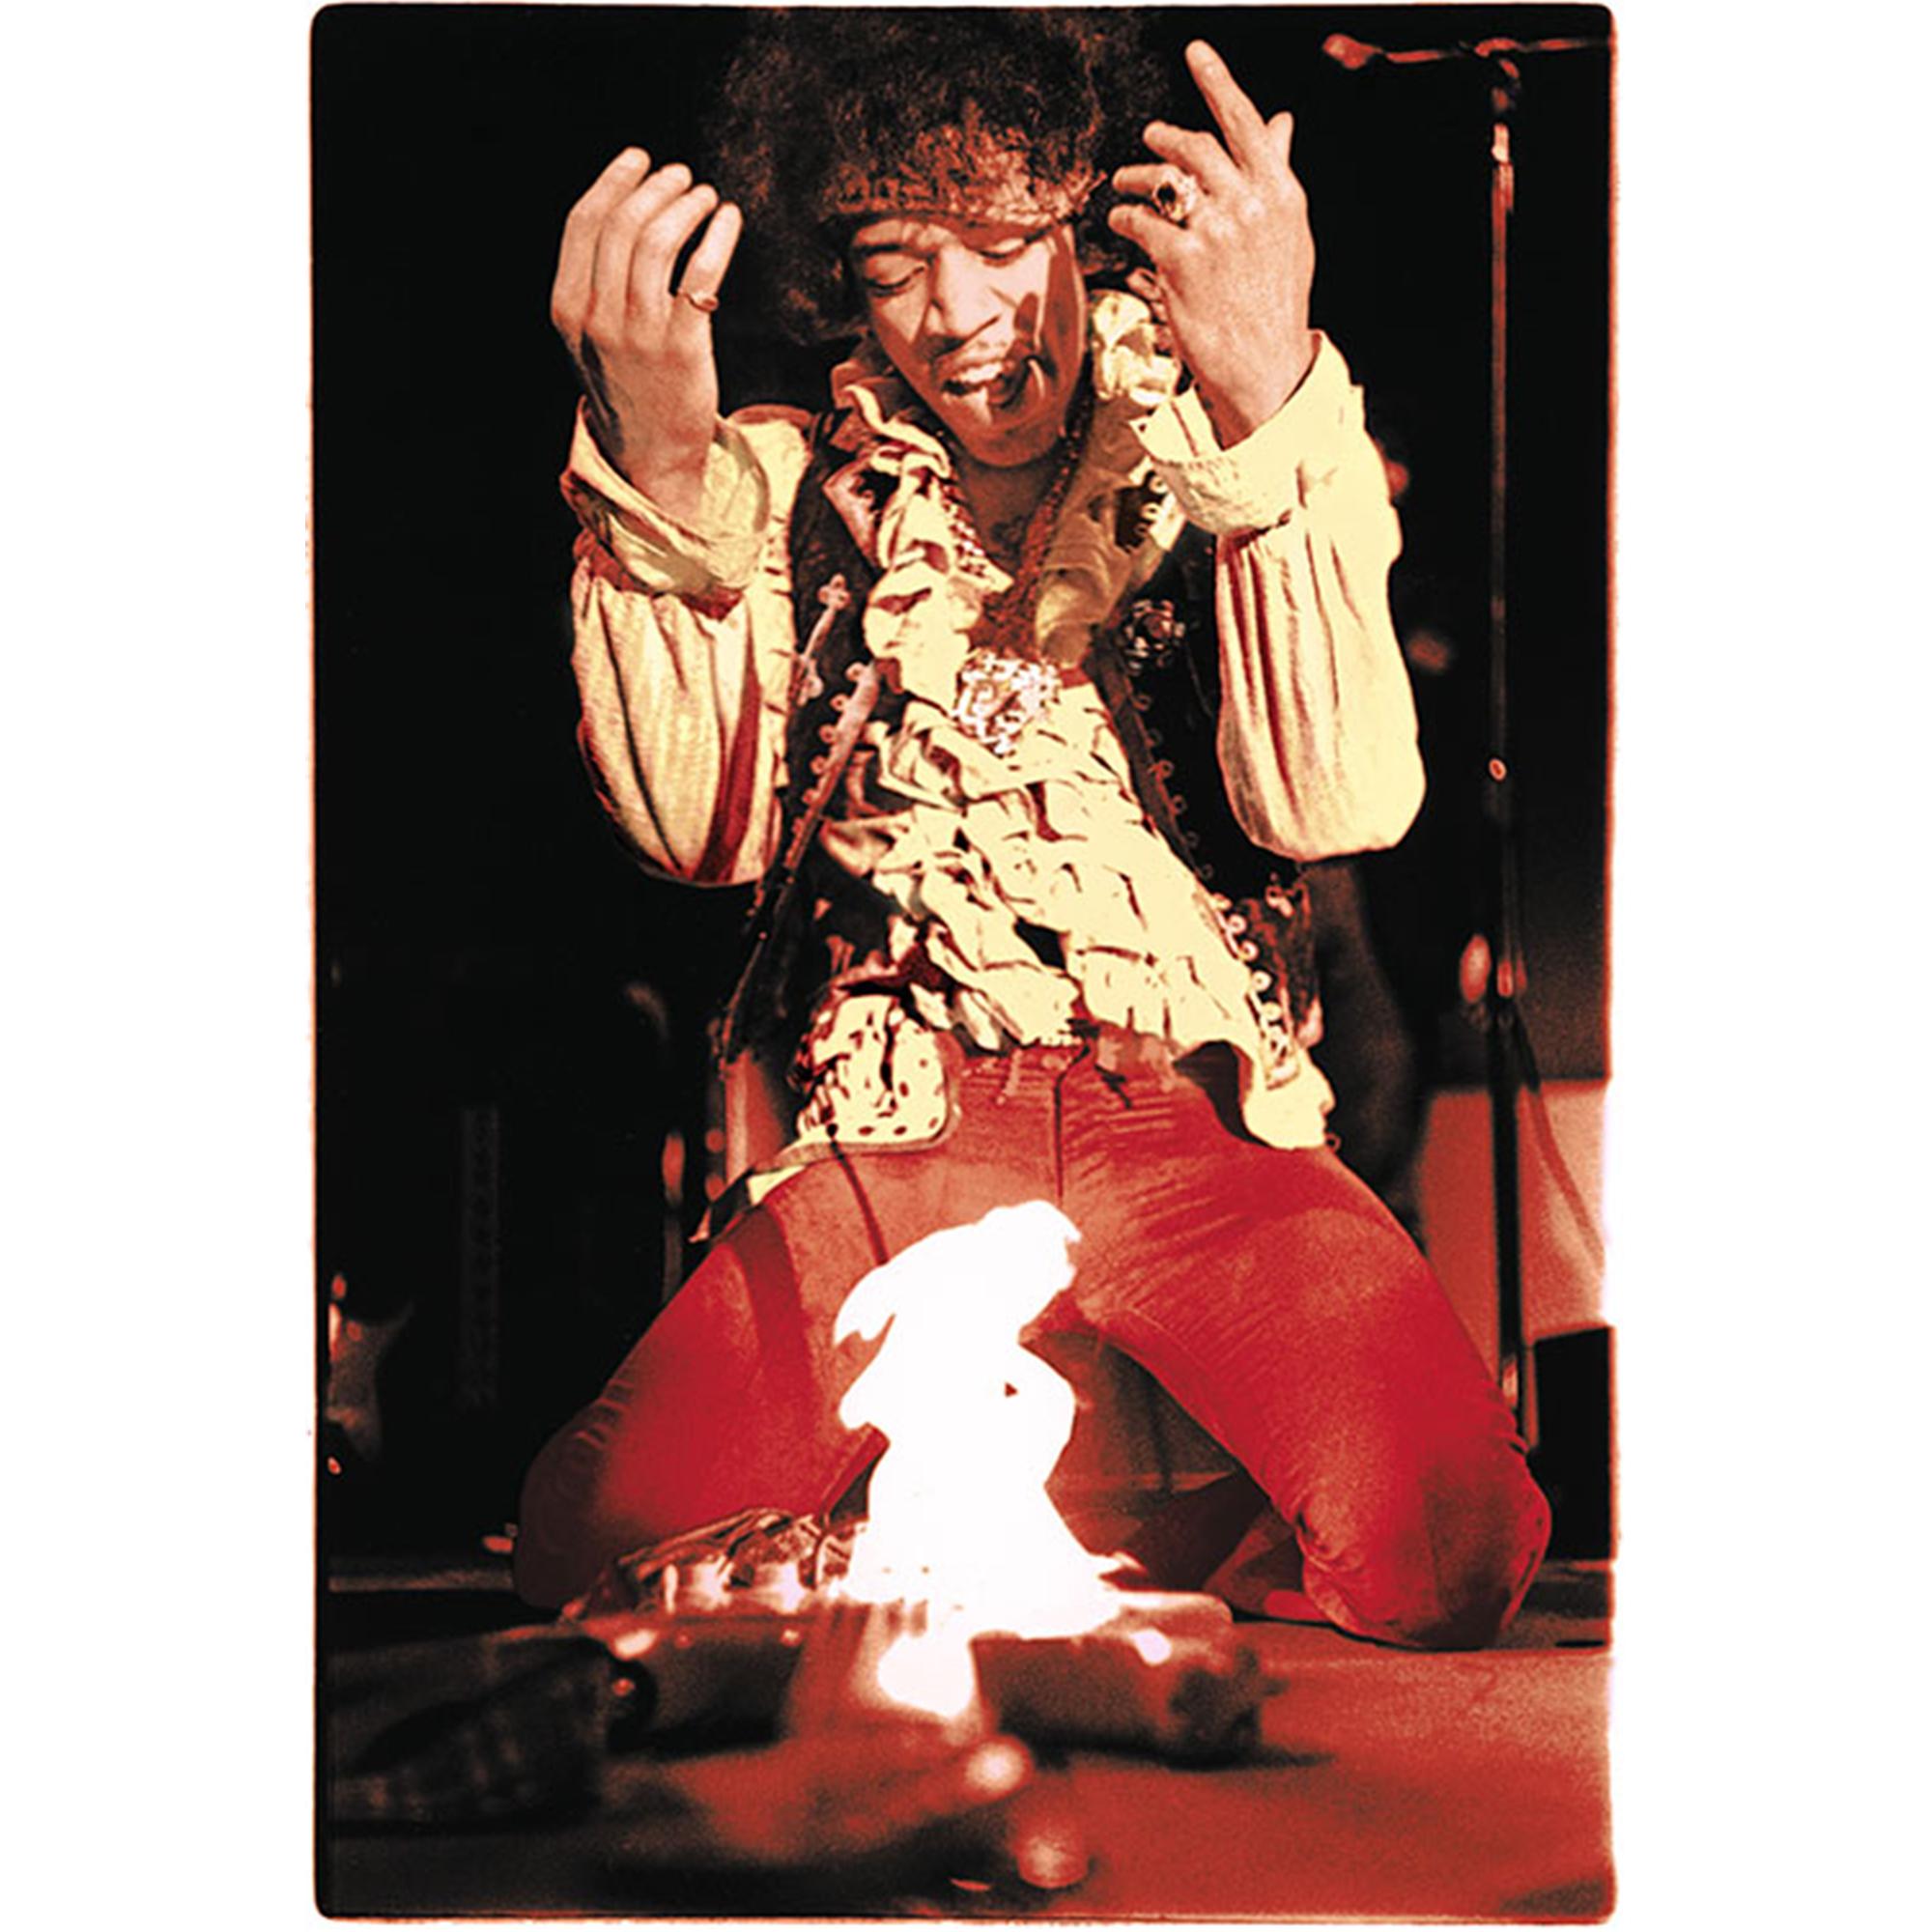 Tirage limité signé par Ed Caraeff de Jimi Hendrix mettant le feu à sa guitare Fender Stratocaster lors d'un concert au Monterey International Pop Music Festival, le 18 juin 1967 à Monterey, Californie.

Pris à l'âge de 17 ans, Ed était le plus